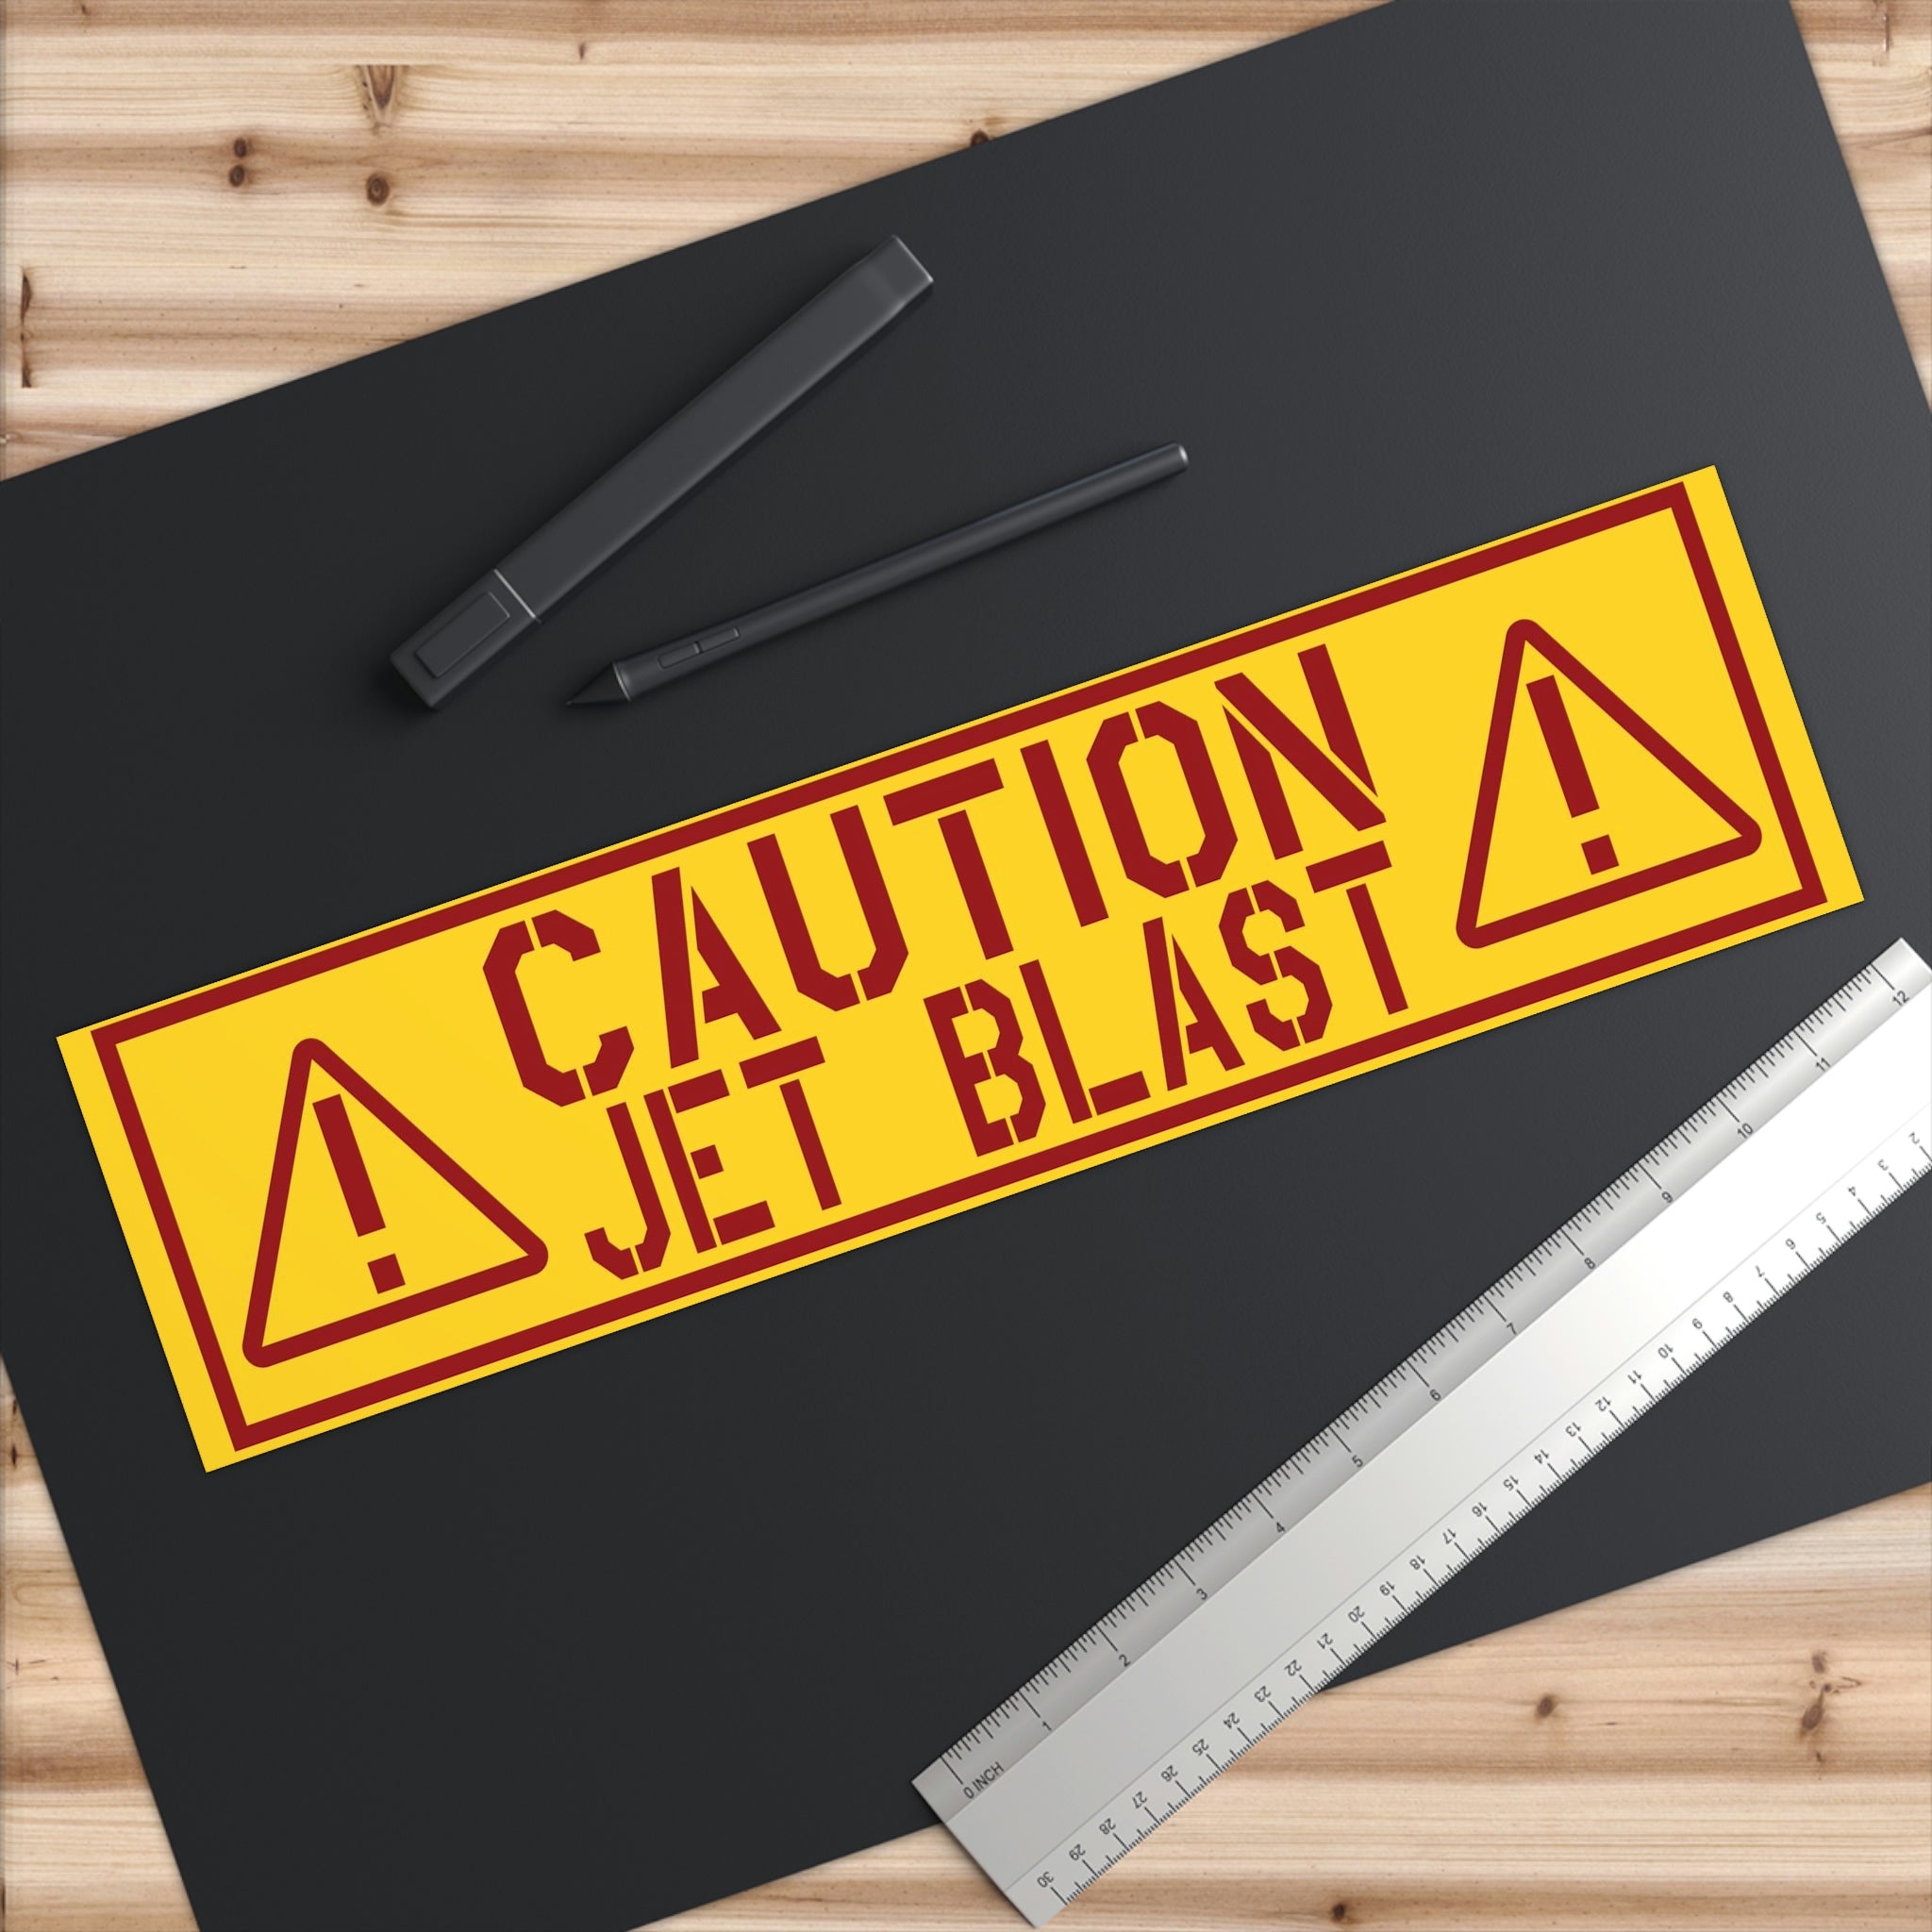 "Cuation - Jet Blast" Bumper Stickers - I Love a Hangar